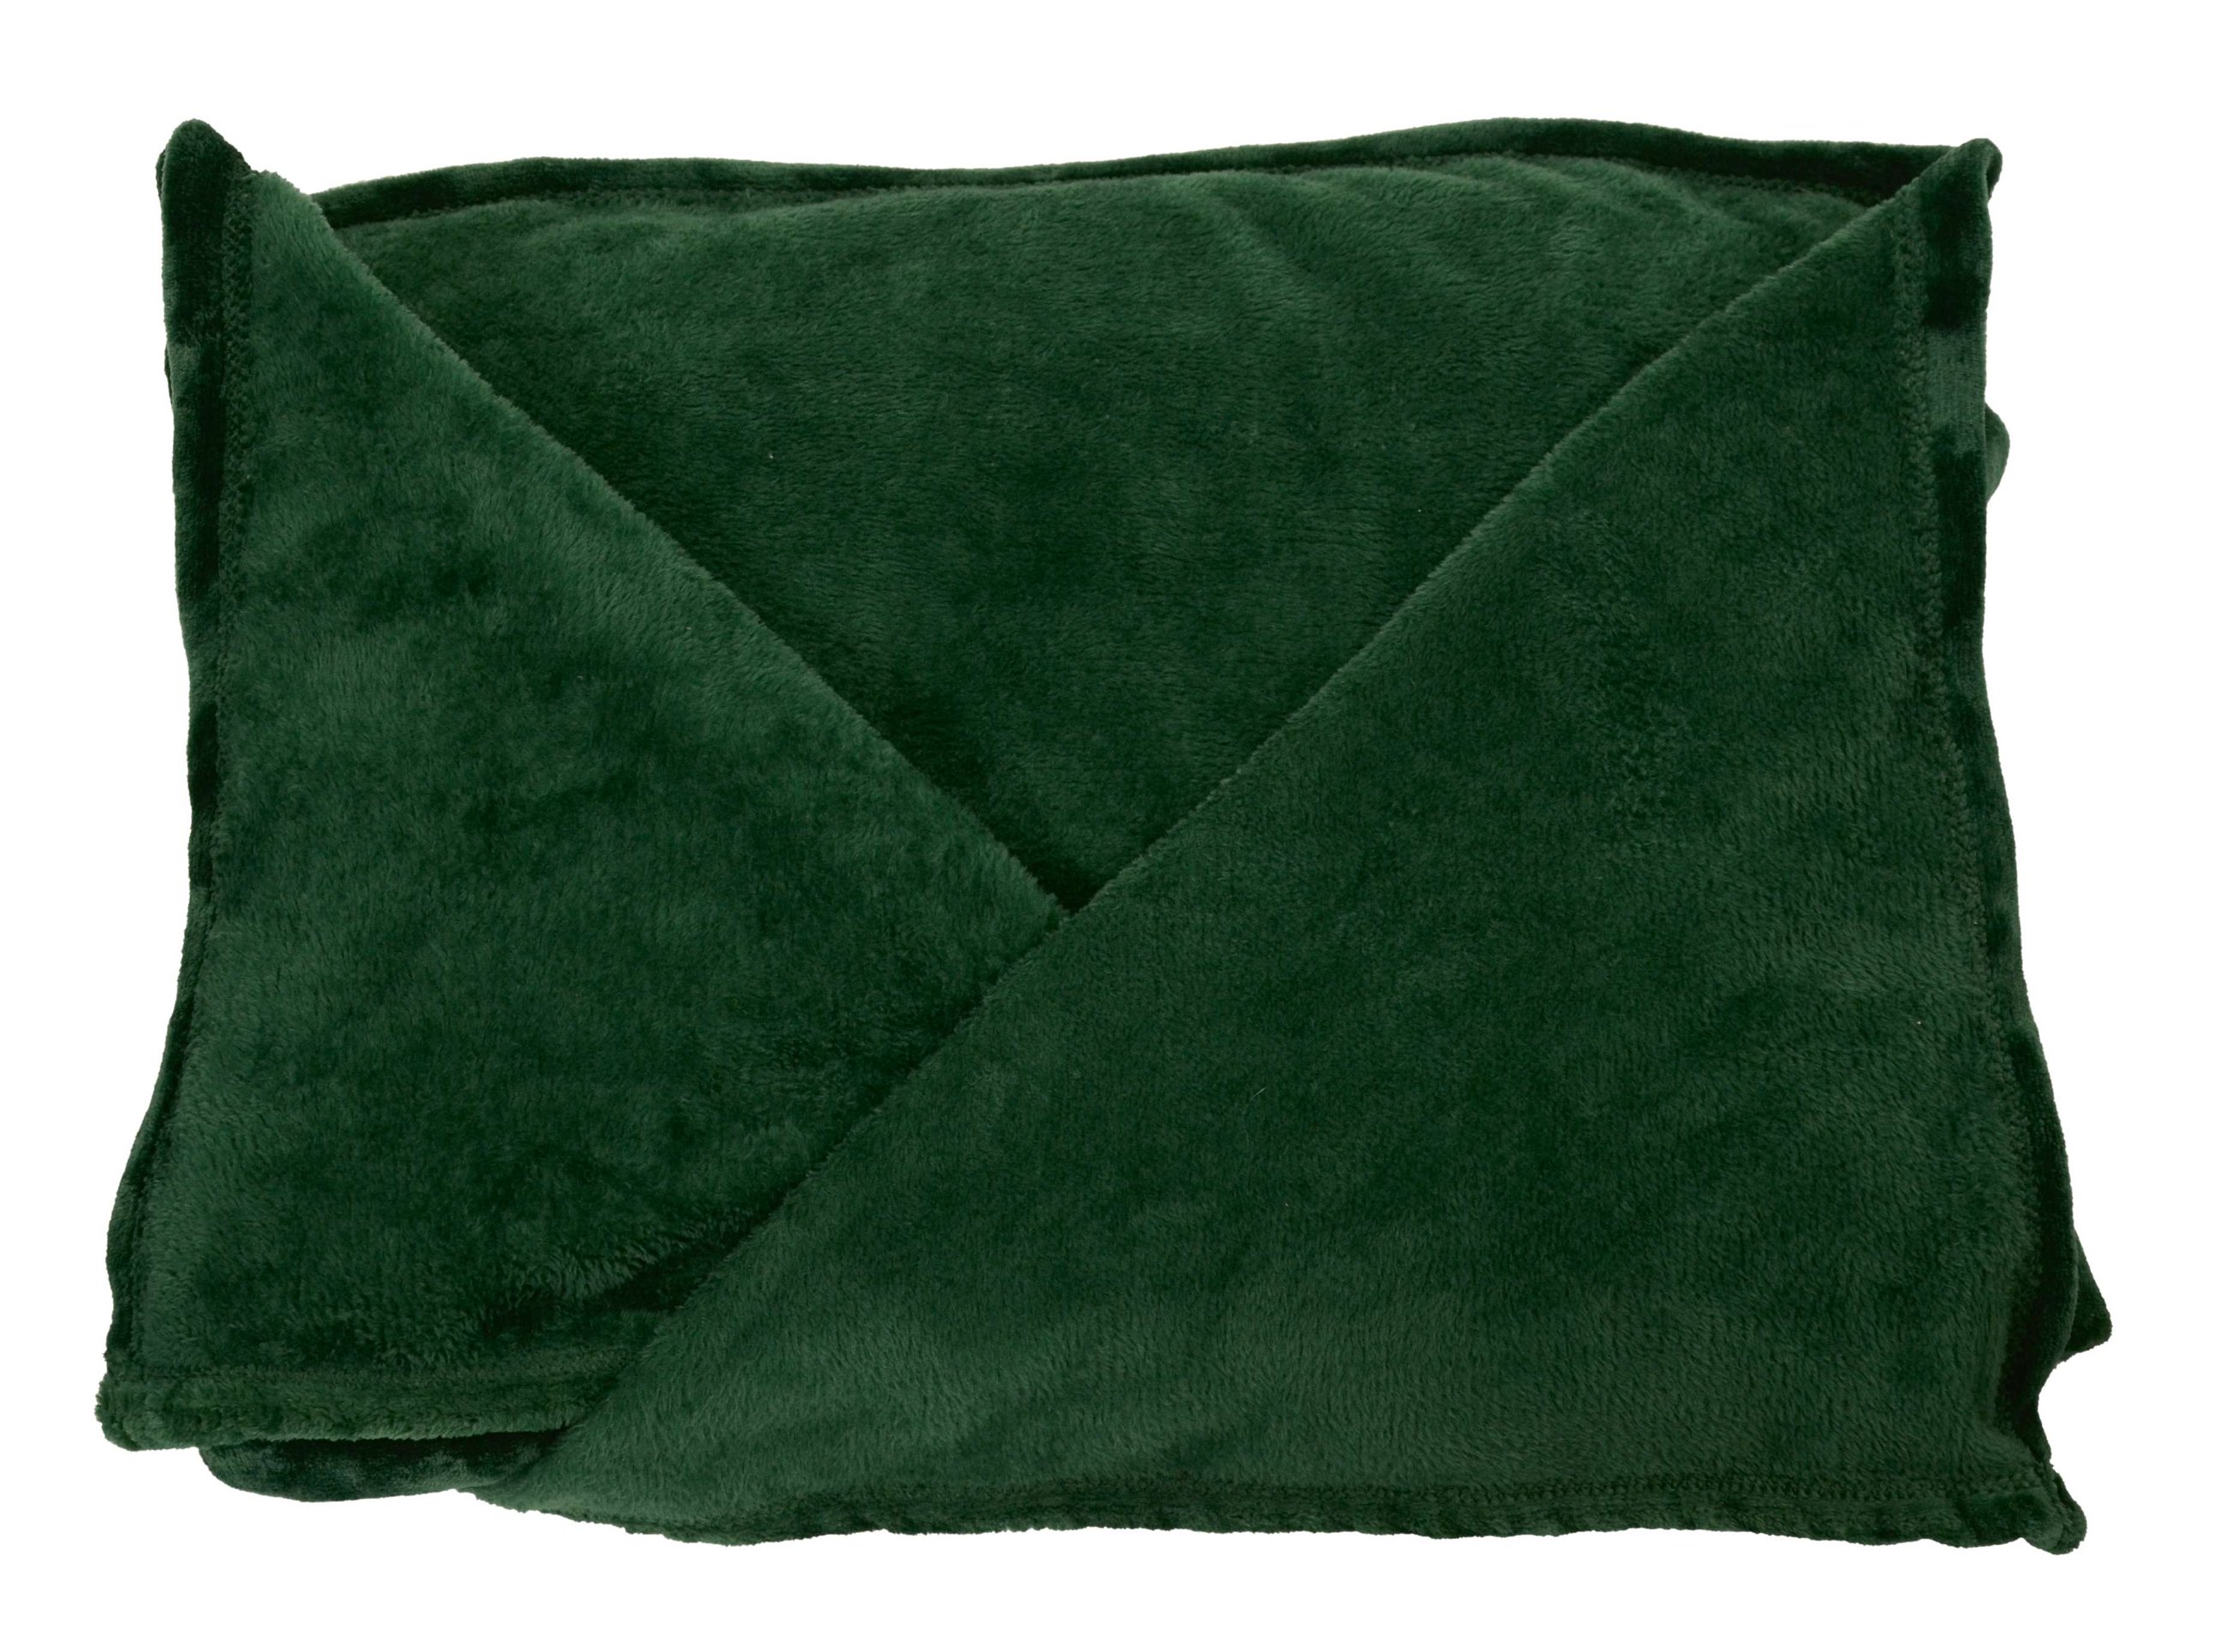 Coperta in pile con maniche verdi 150x180cm